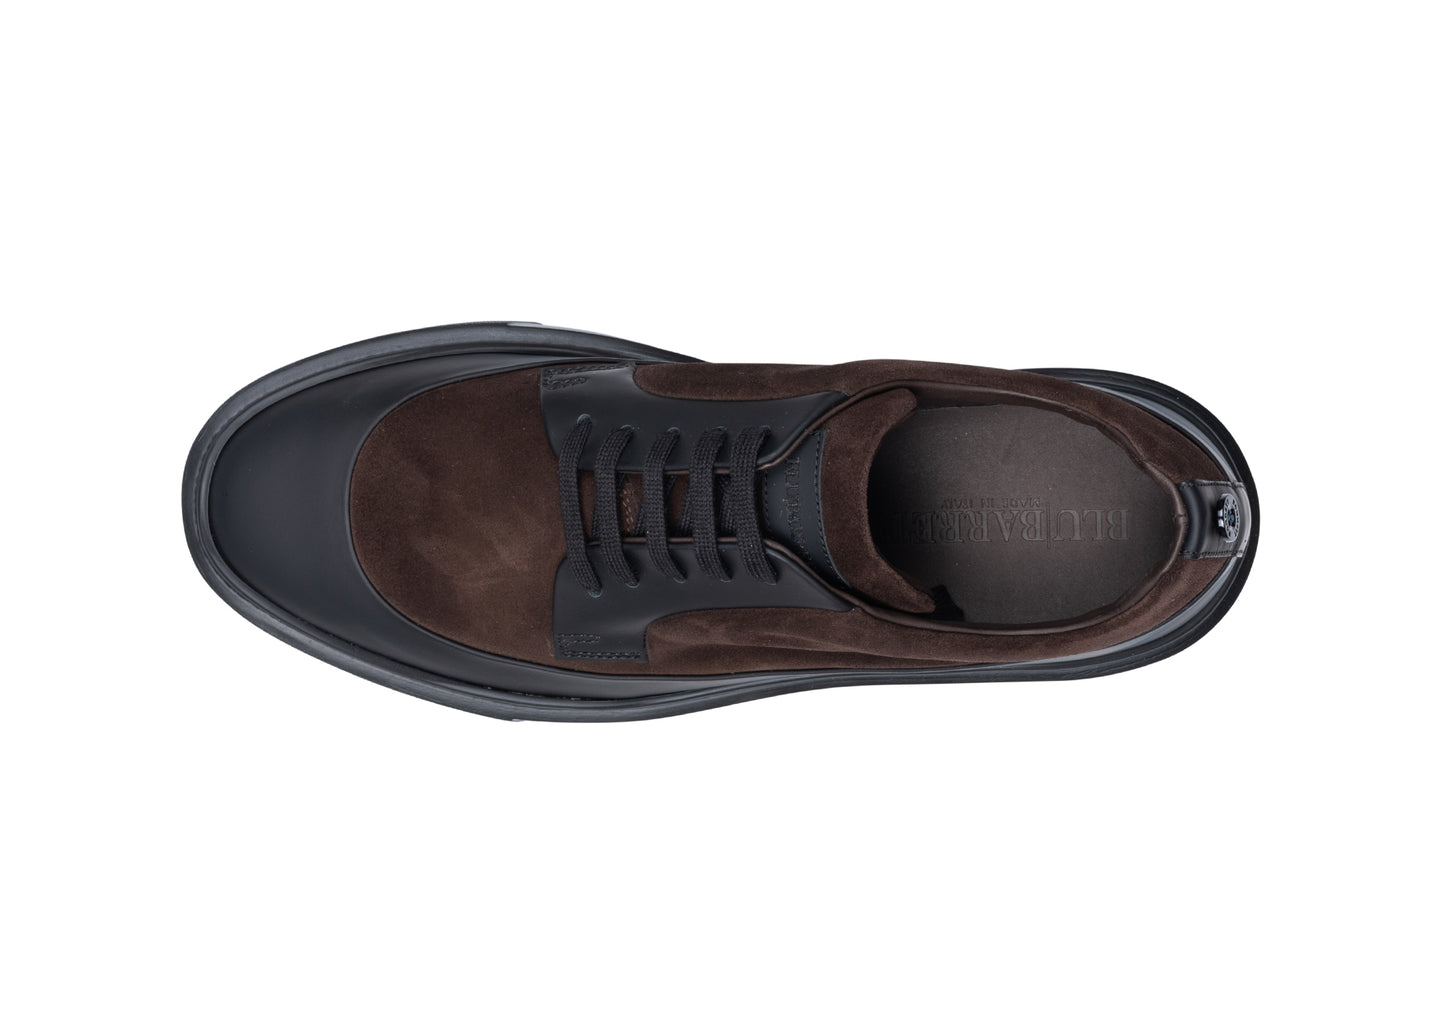 Blu Barrett Sneaker - Rise11471.1